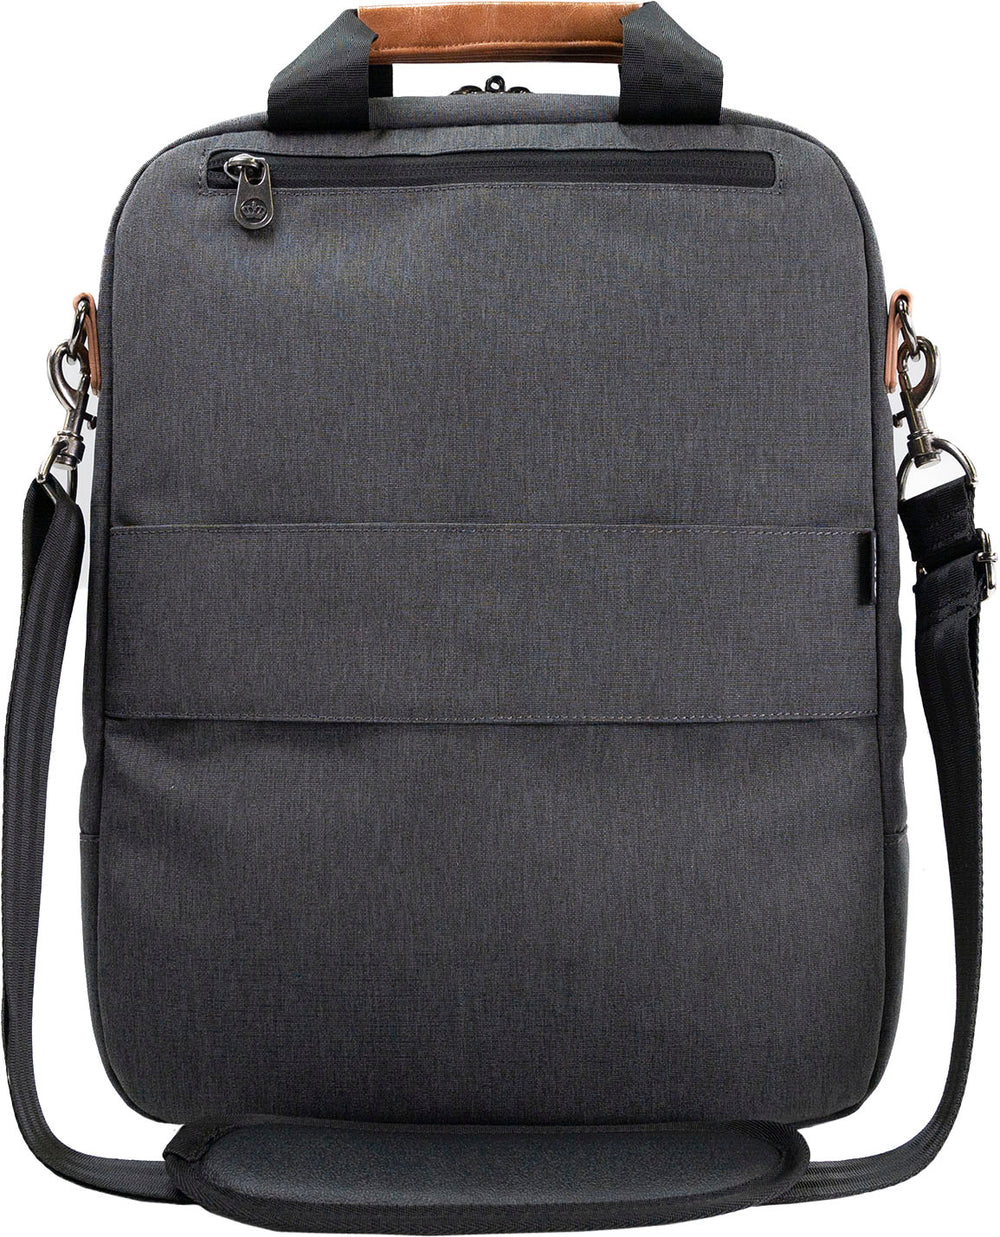 PKG - Riverdale 11L Vertical Messenger Bag for 16" Laptop - Dark Grey/Tan_1